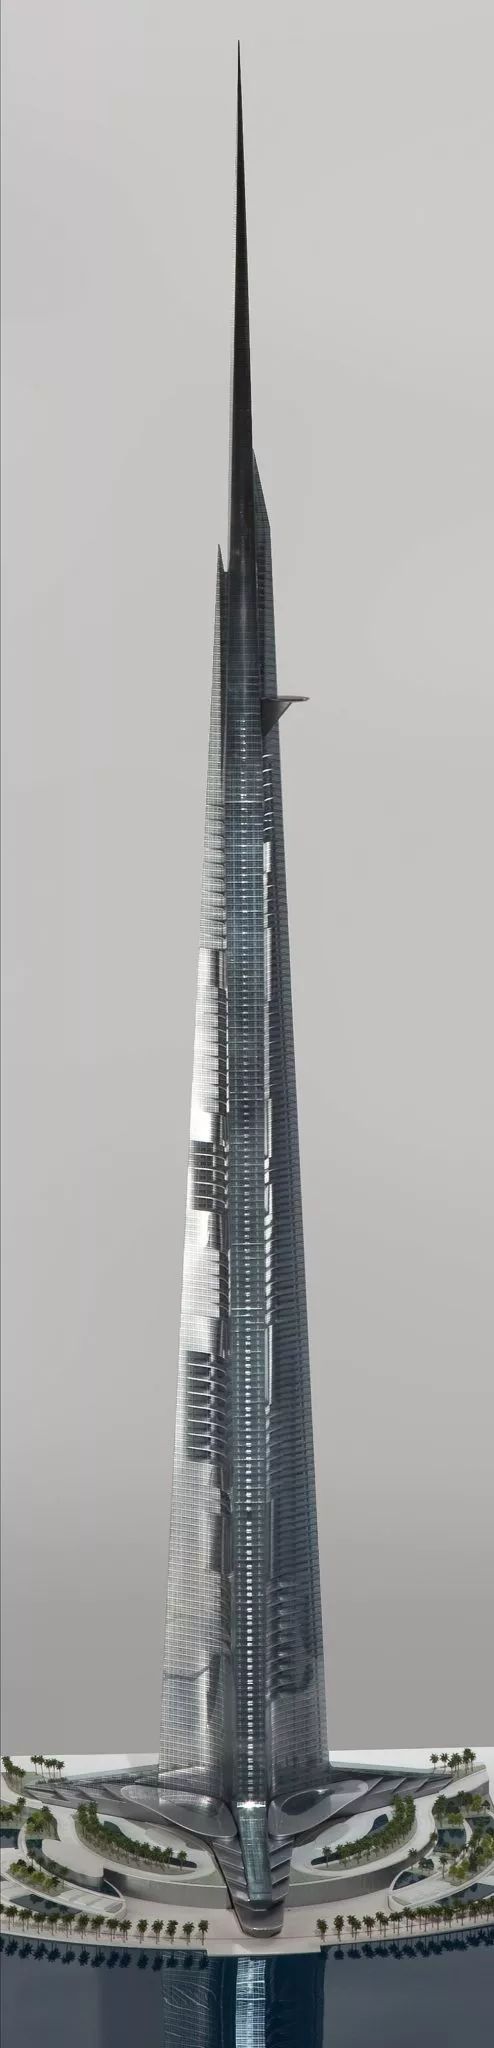 世界第一高楼,哈利法塔,迪拜哈利法塔,吉达塔,迪拜_旅游